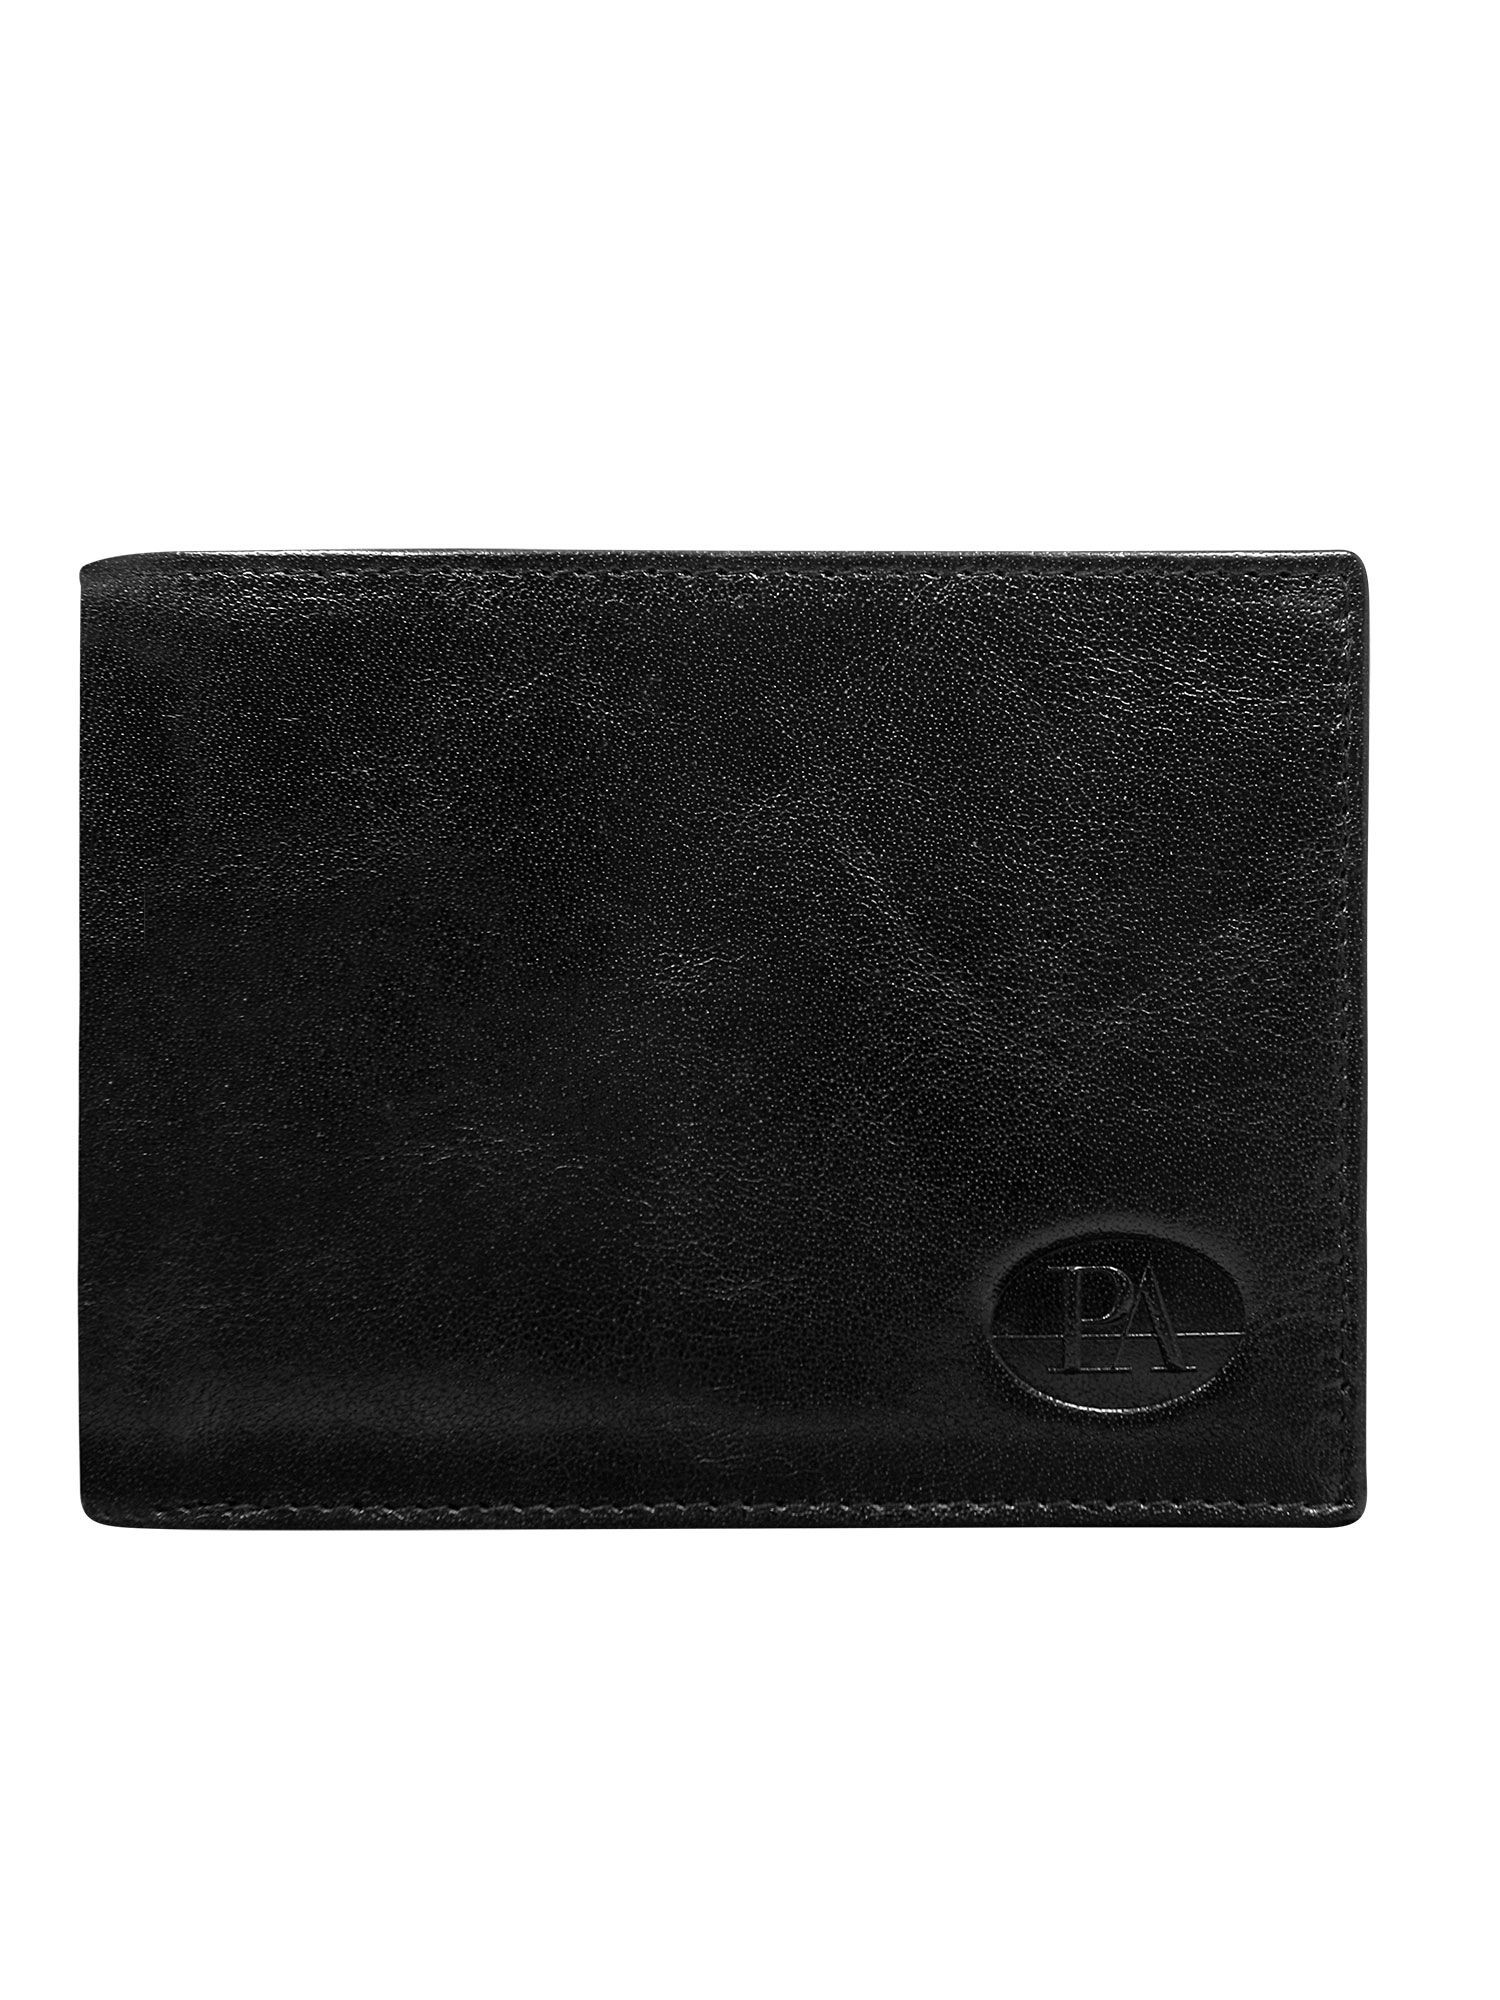 Peněženka CE PR PW 008 model 14834396 černá - FPrice Velikost: jedna velikost